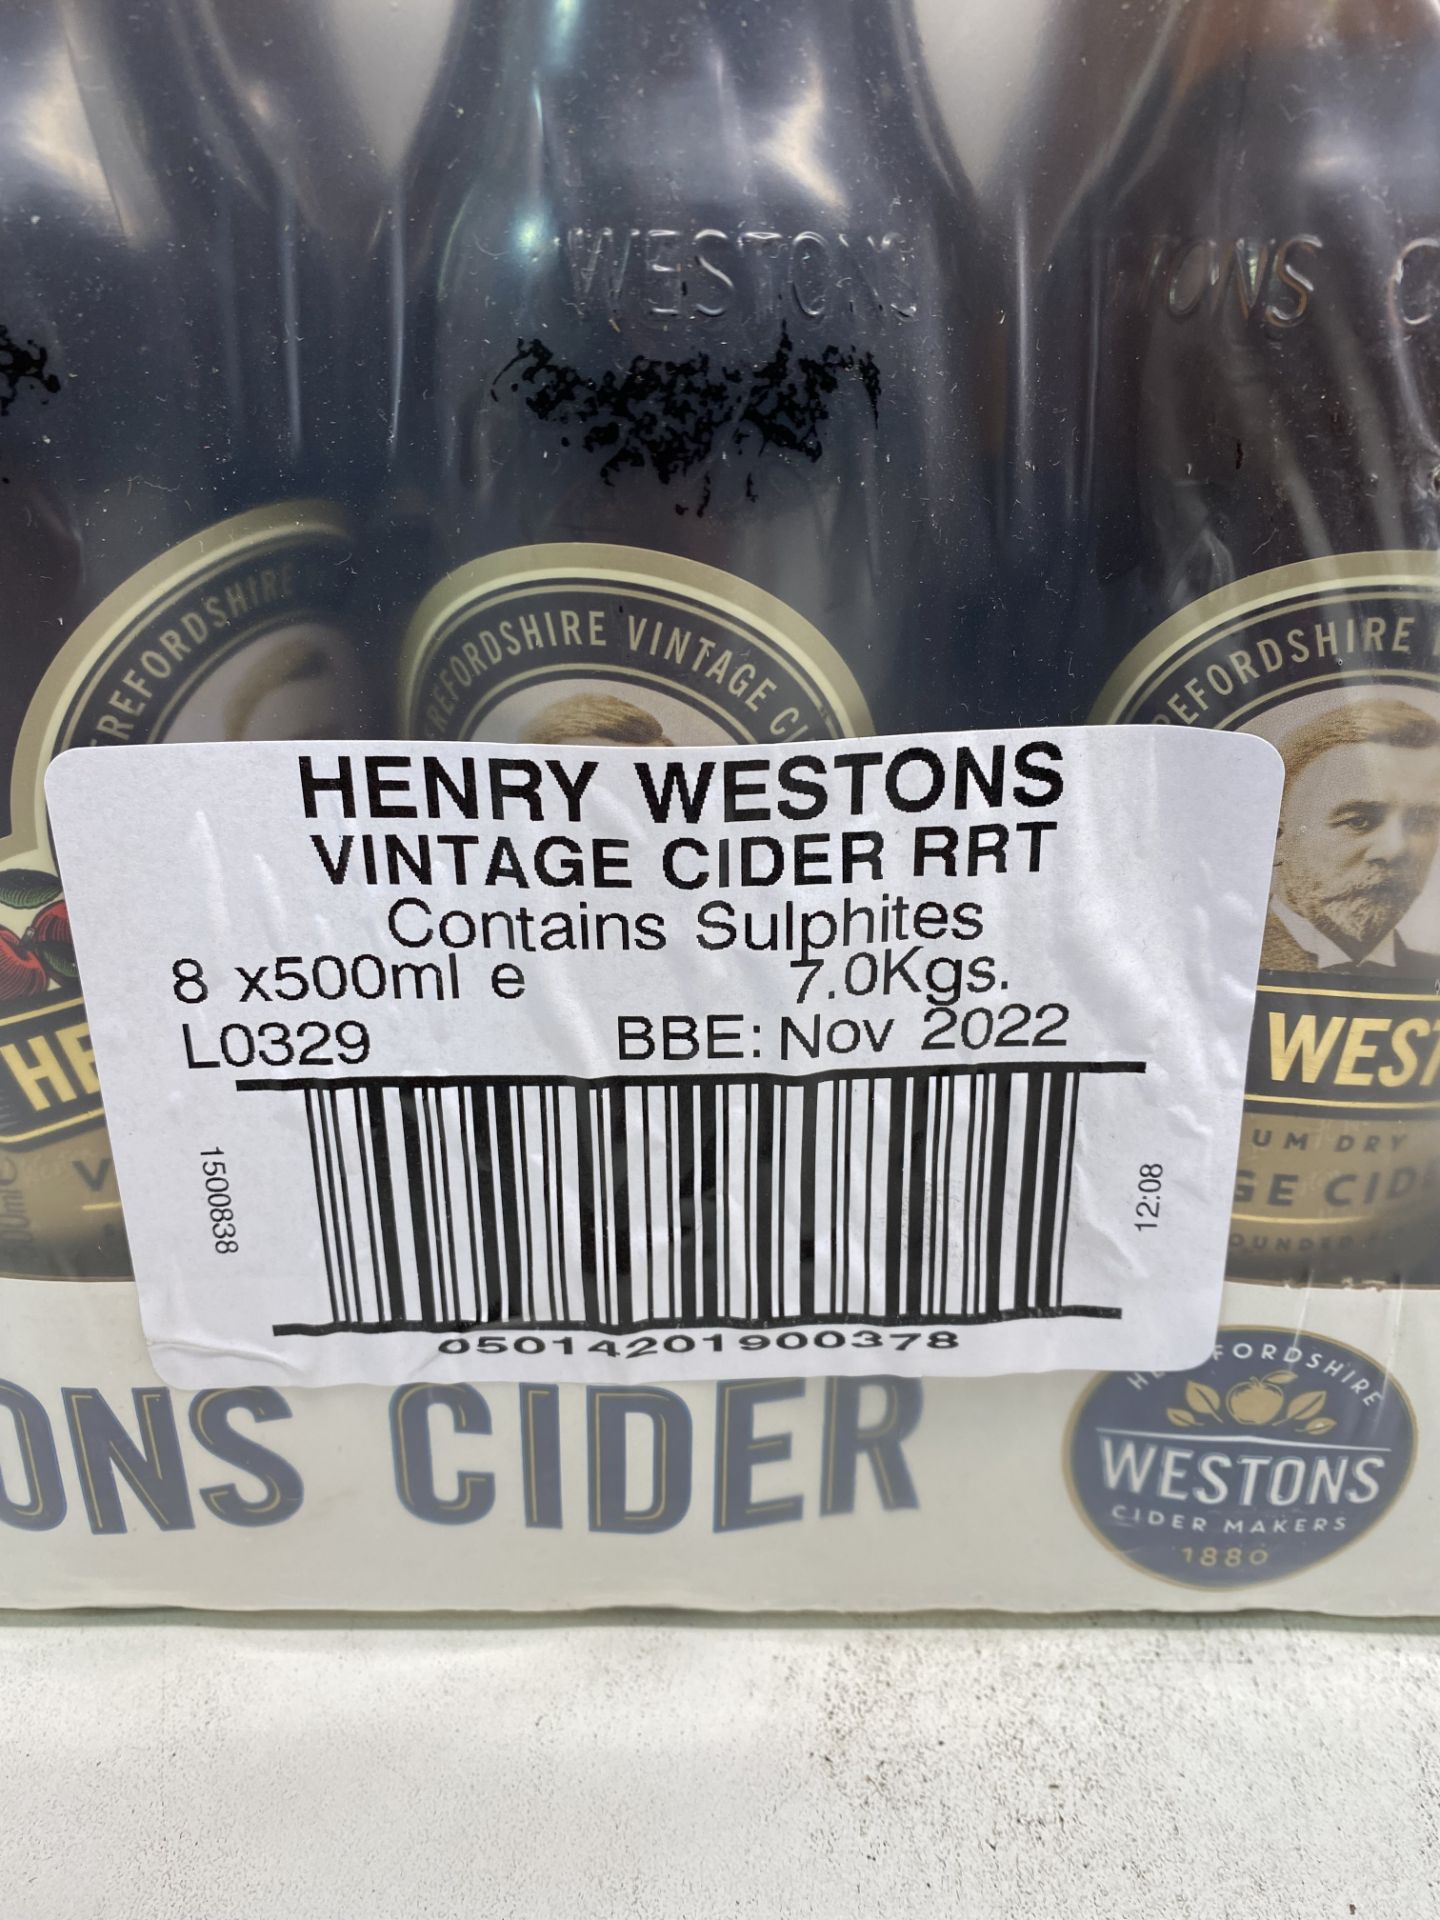 32 x Bottles Of Weston's Vintage Cider - See Description - Image 3 of 3